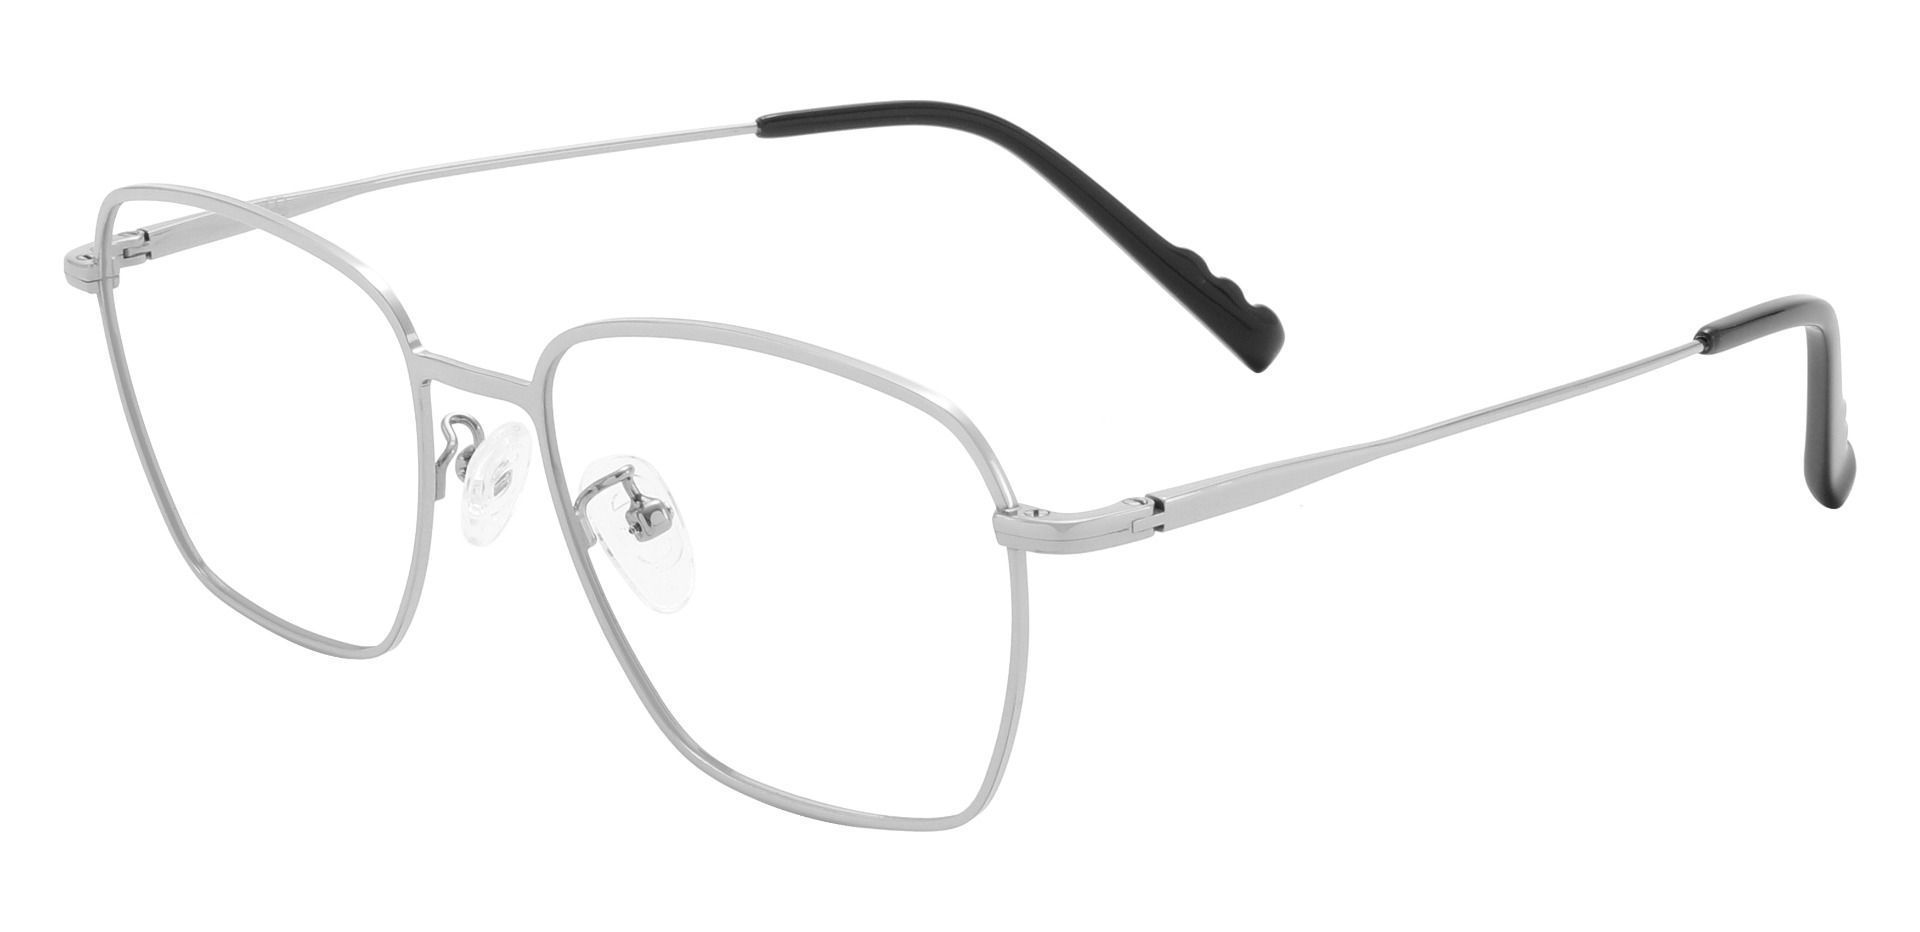 Emilio Geometric Prescription Glasses - Silver